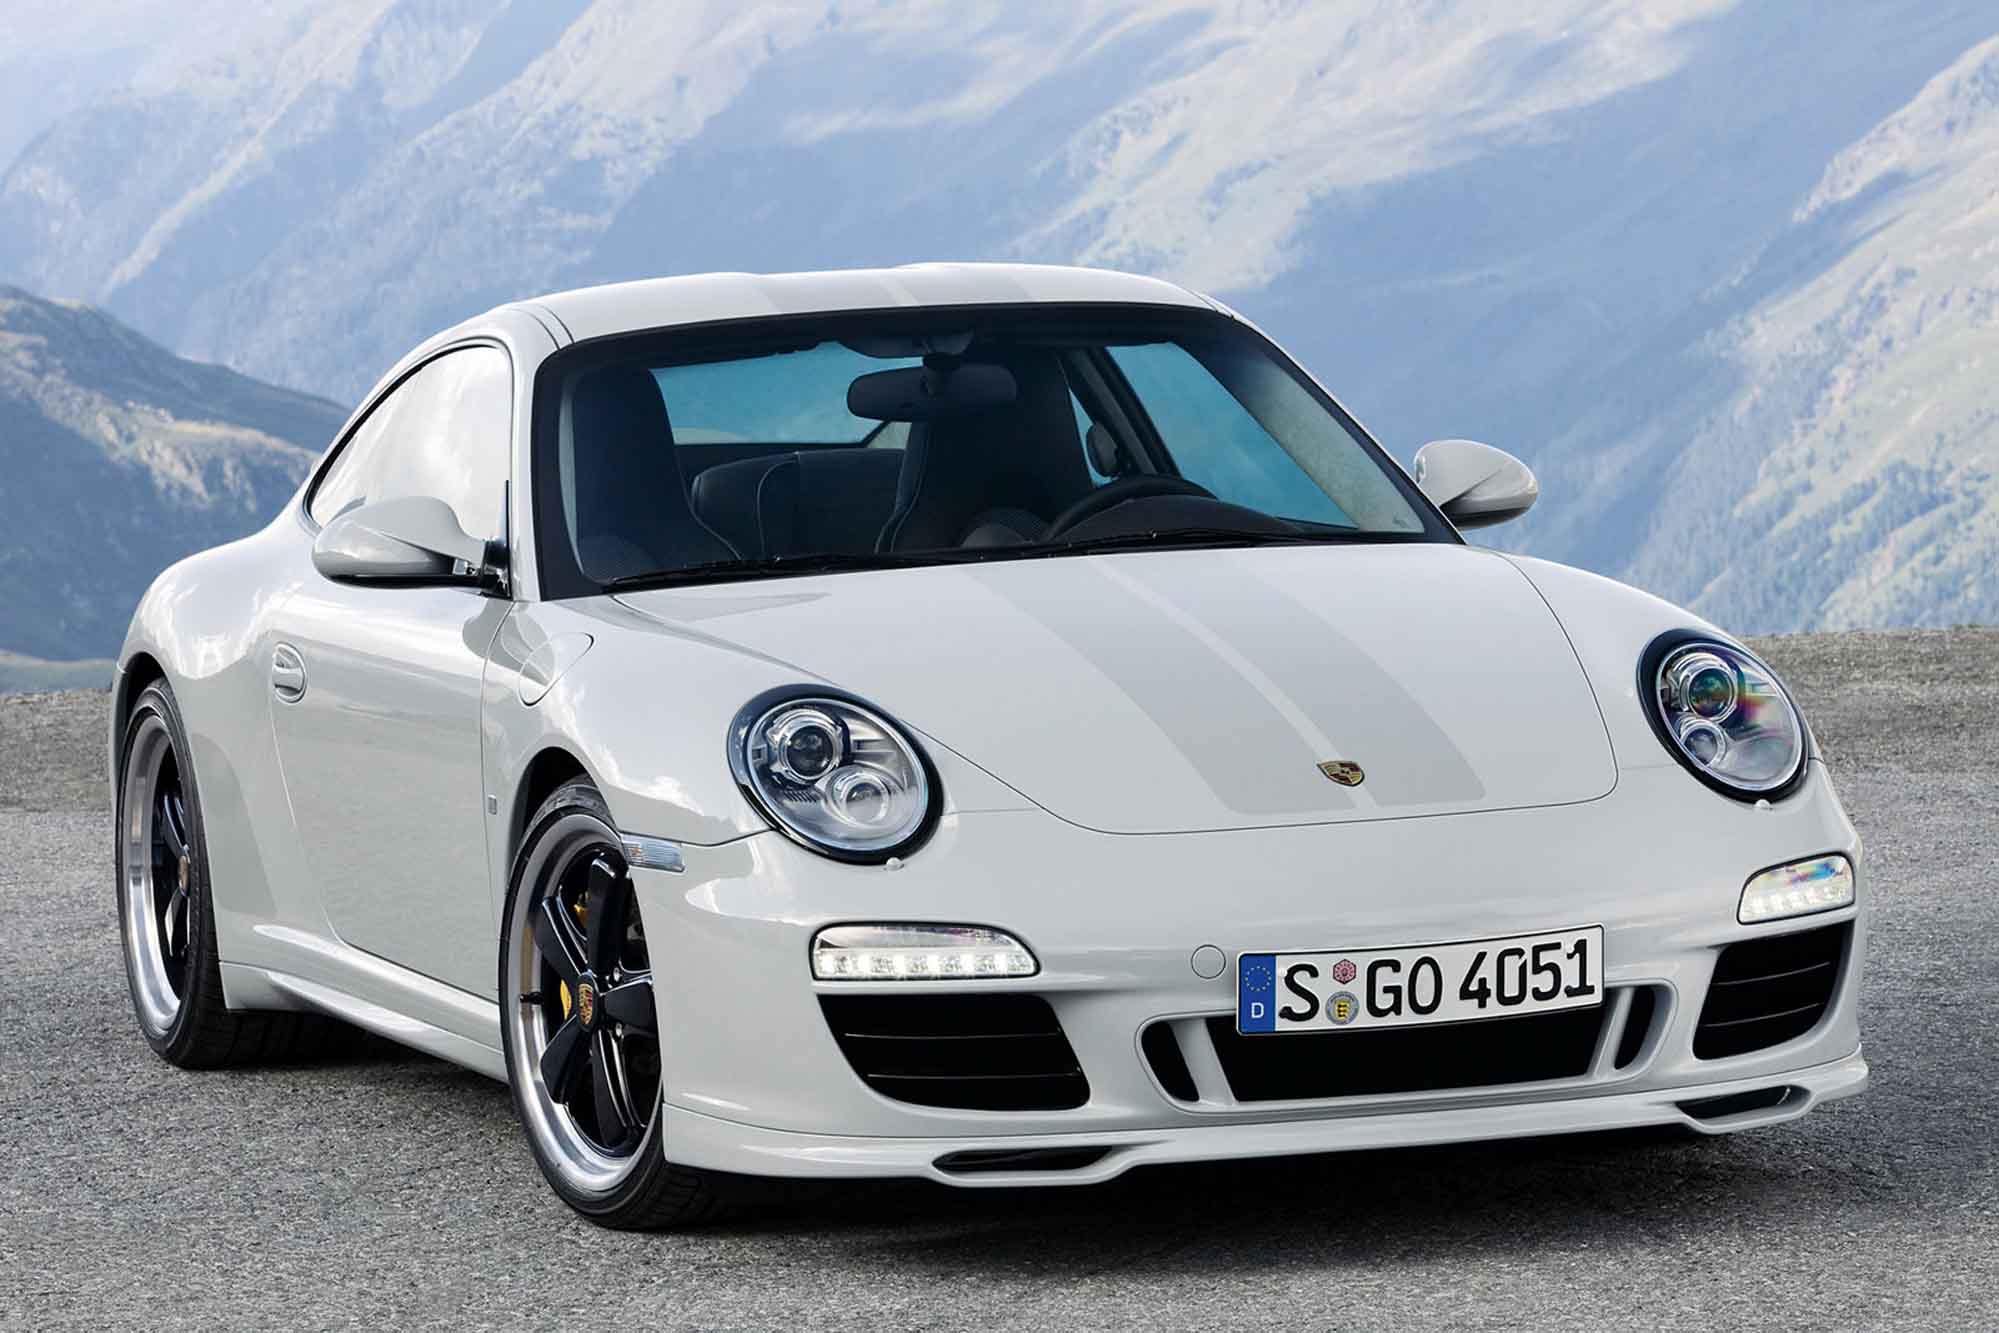 Image principale de l'actu: Porsche 911 sport classic la video les photos 